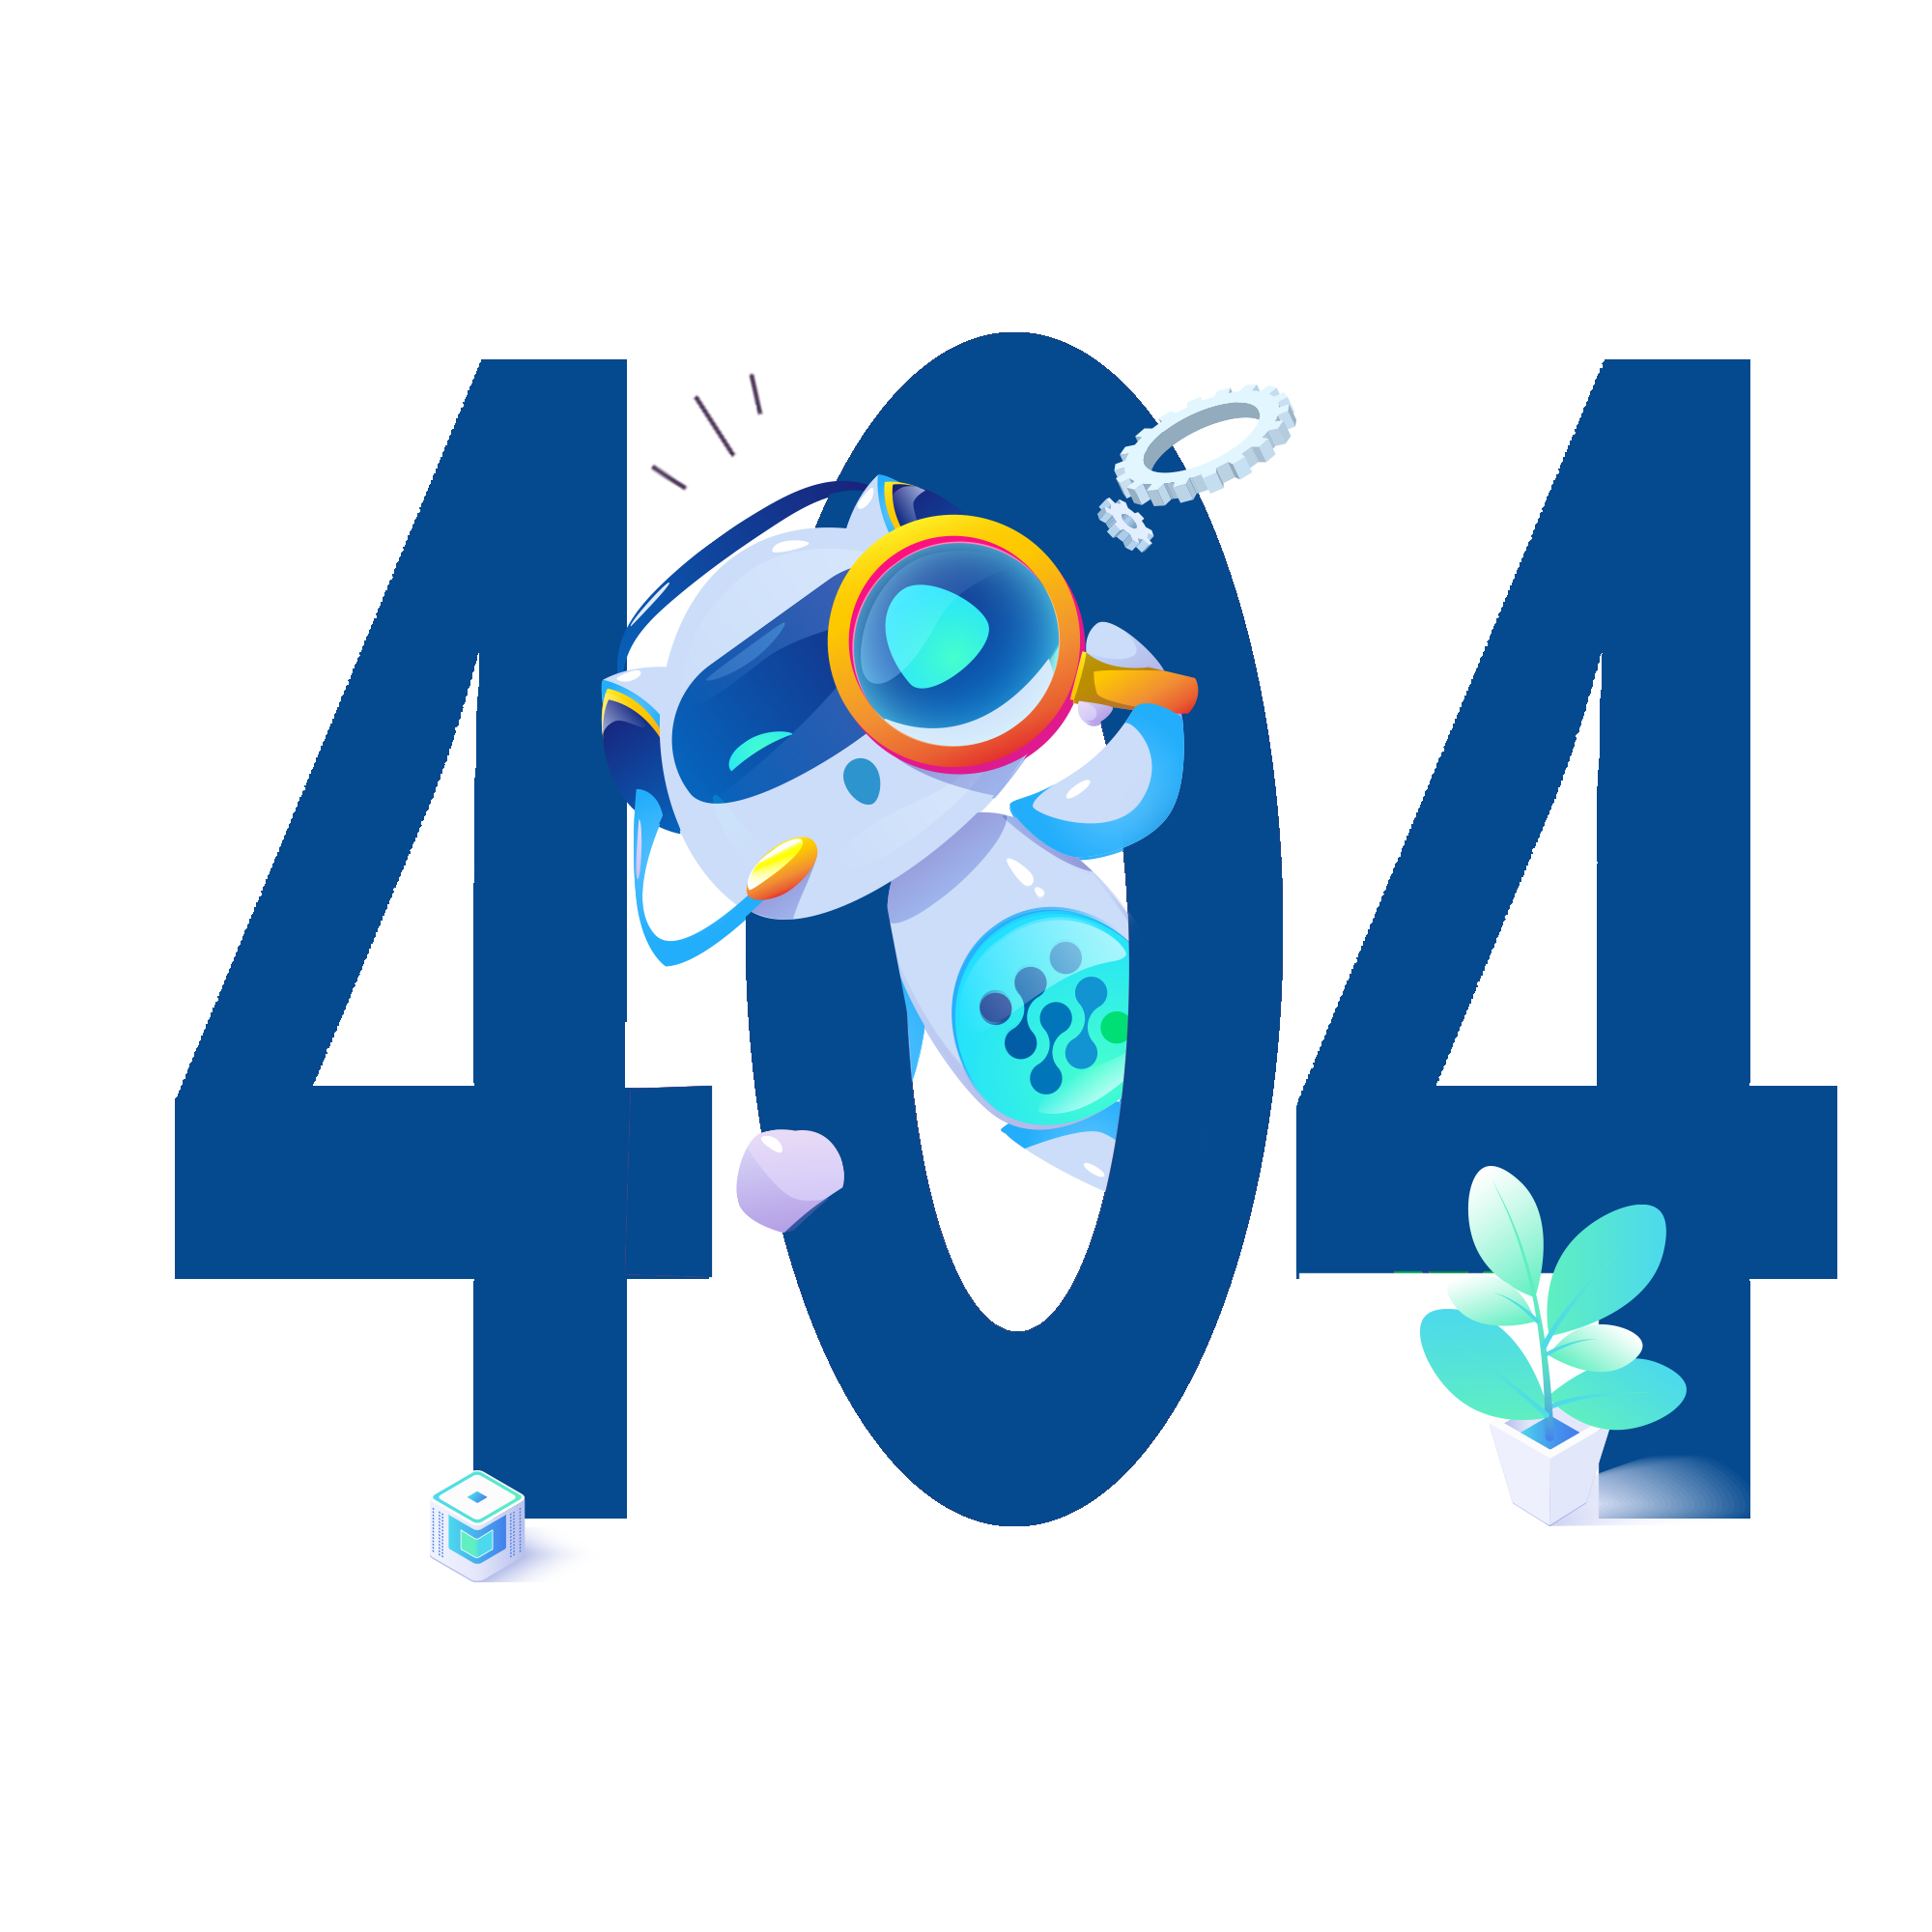  404 error